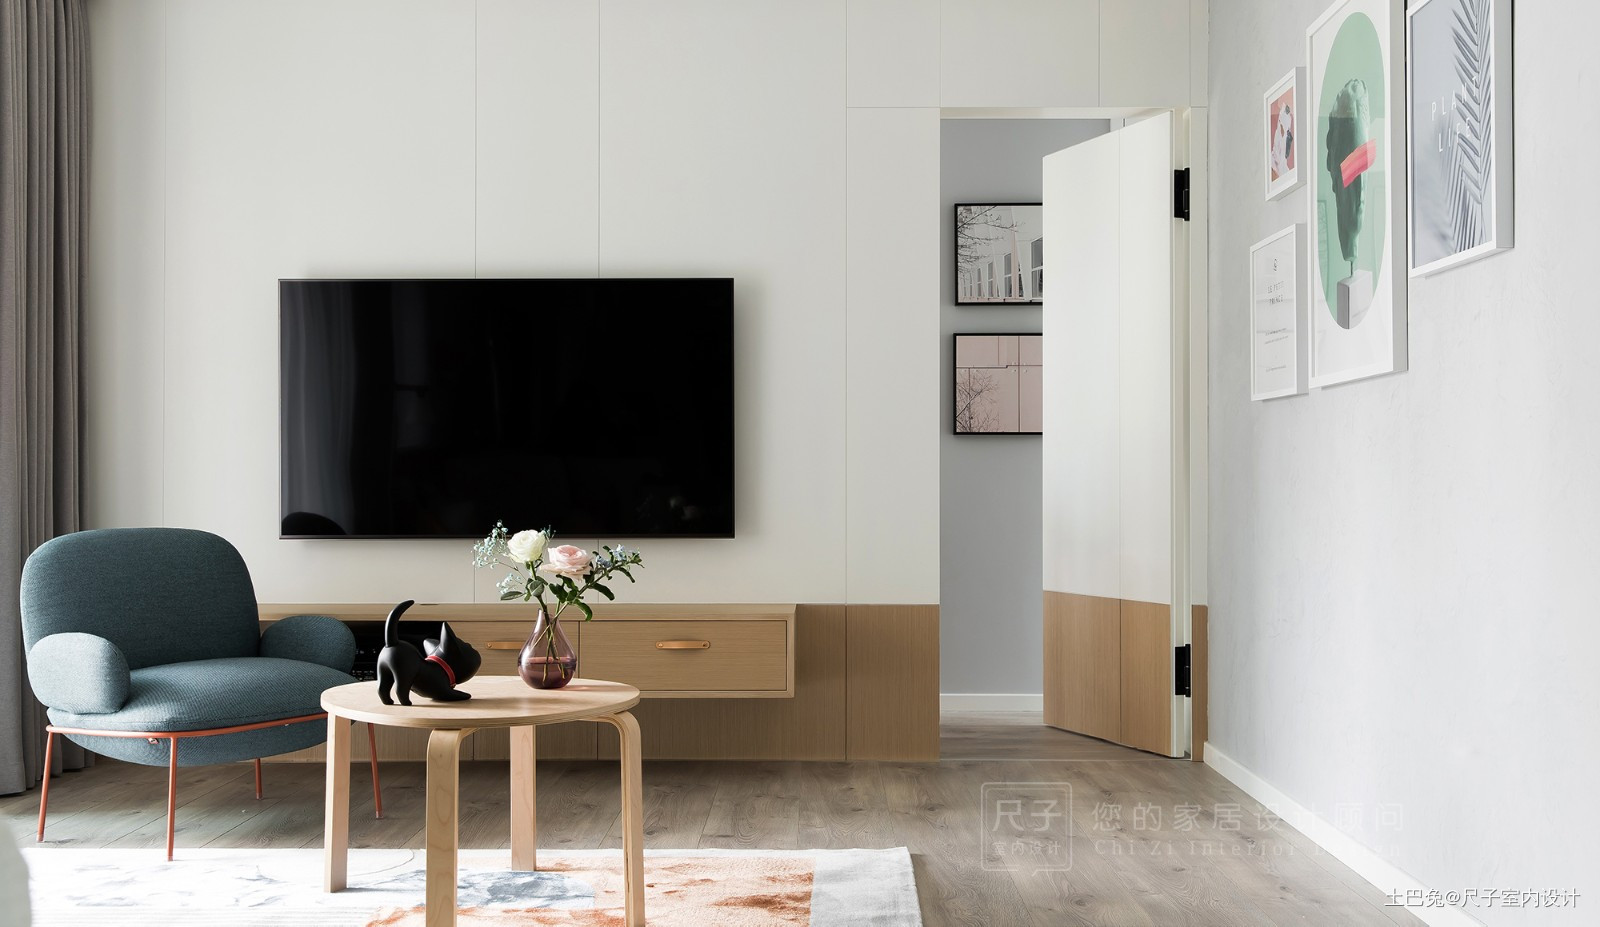 【尺子室内设计】木棉现代简约客厅设计图片赏析